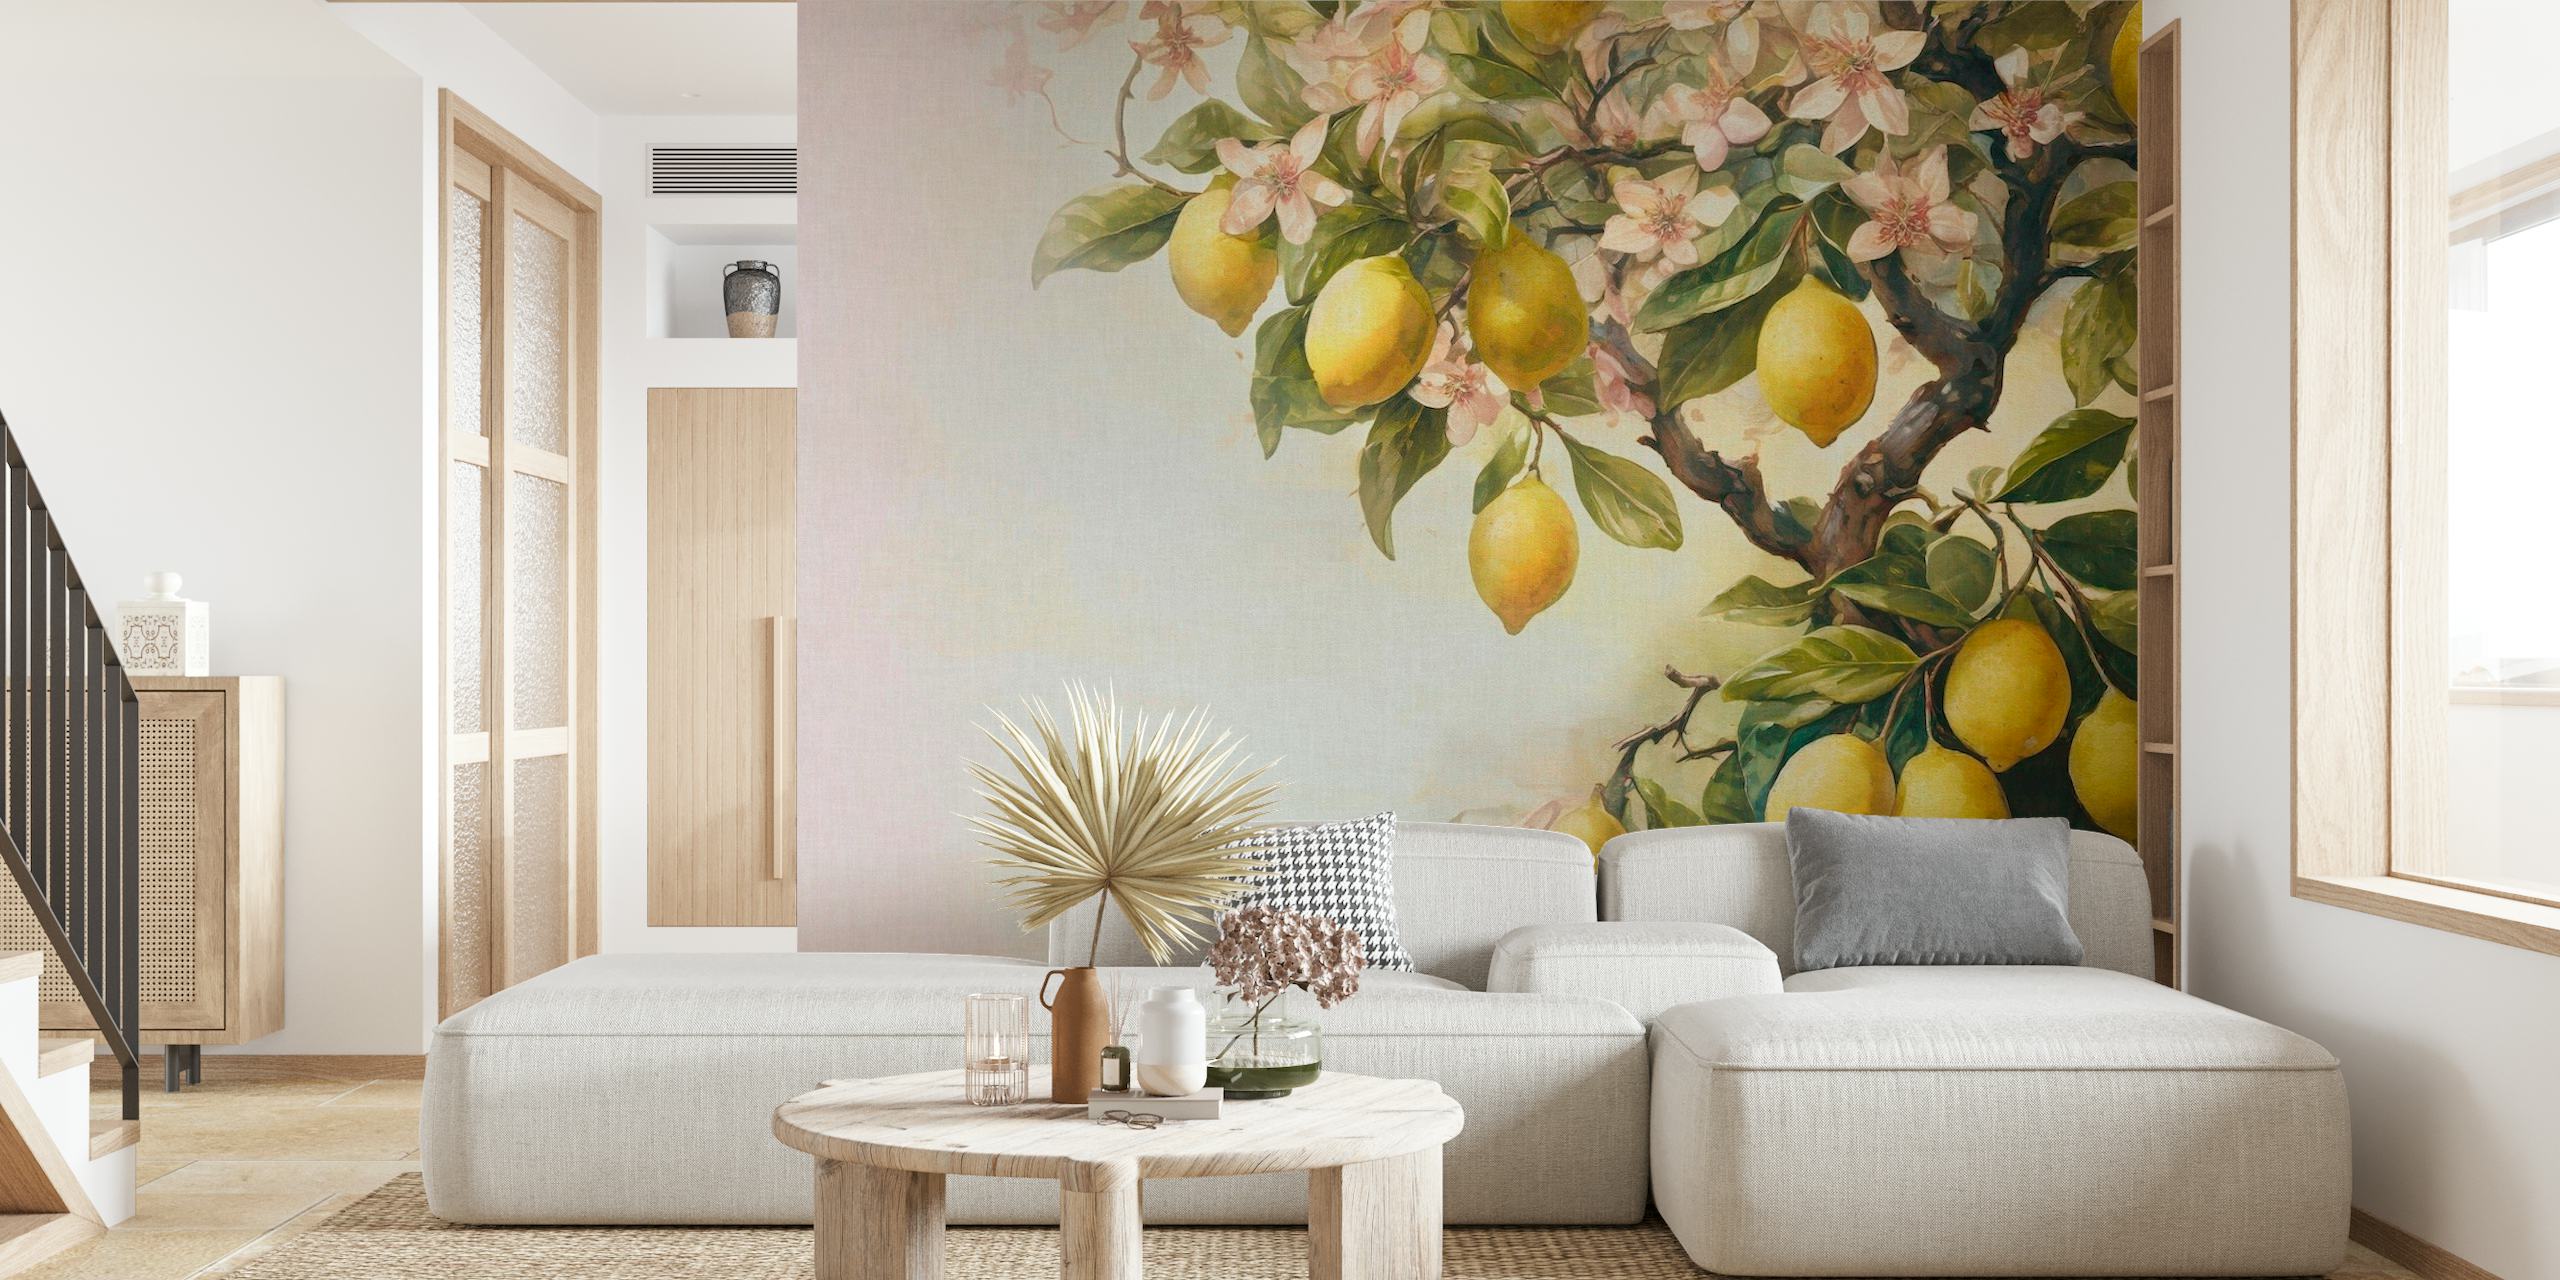 Fototapete eines Zitronenbaums mit reifen Zitronen und Blüten in sanften Vintage-Tönen